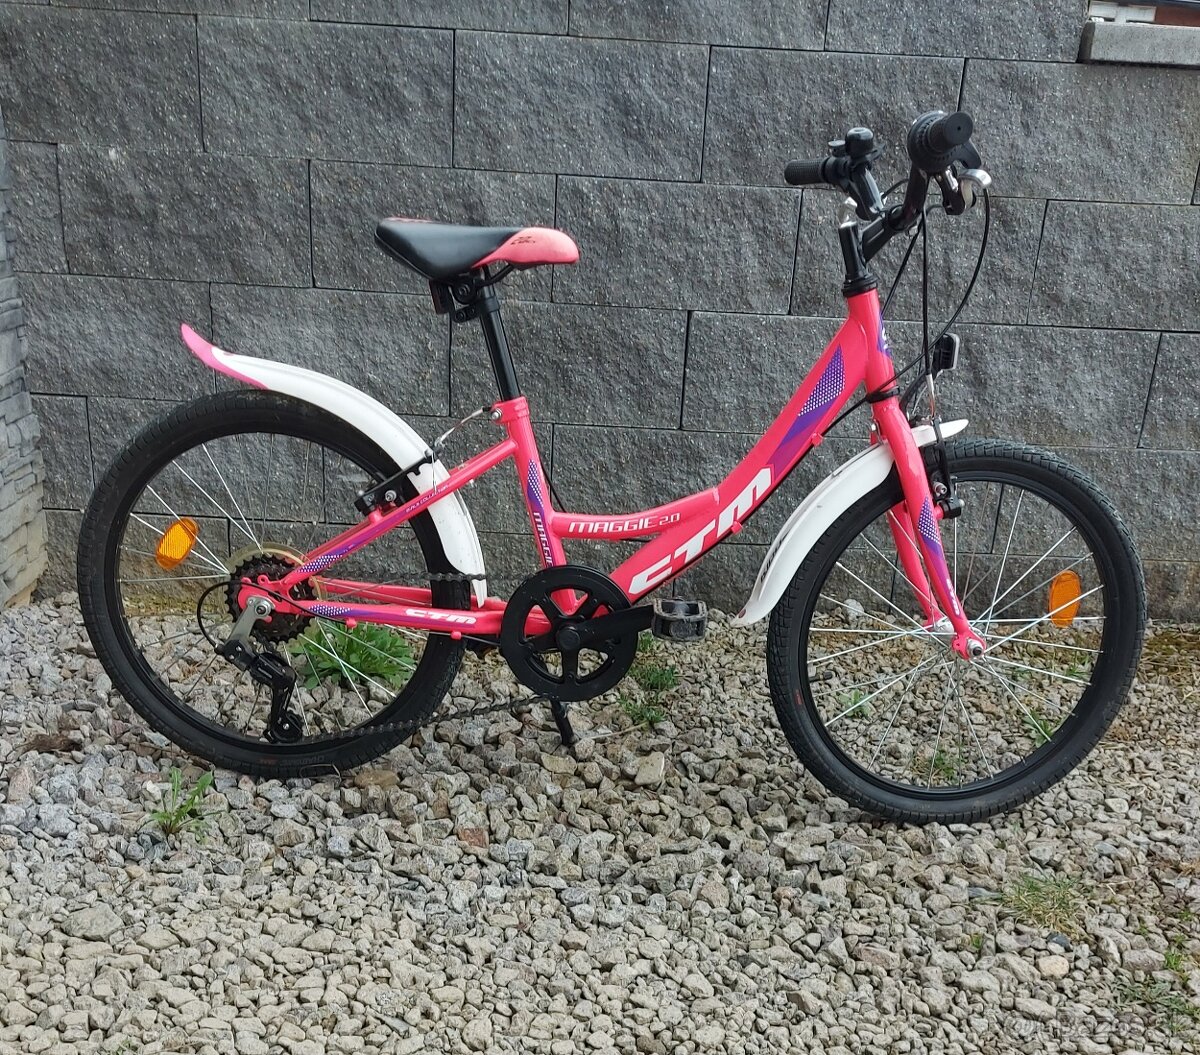 Predám CTM " 20 "  - dievčenský detský bicykel